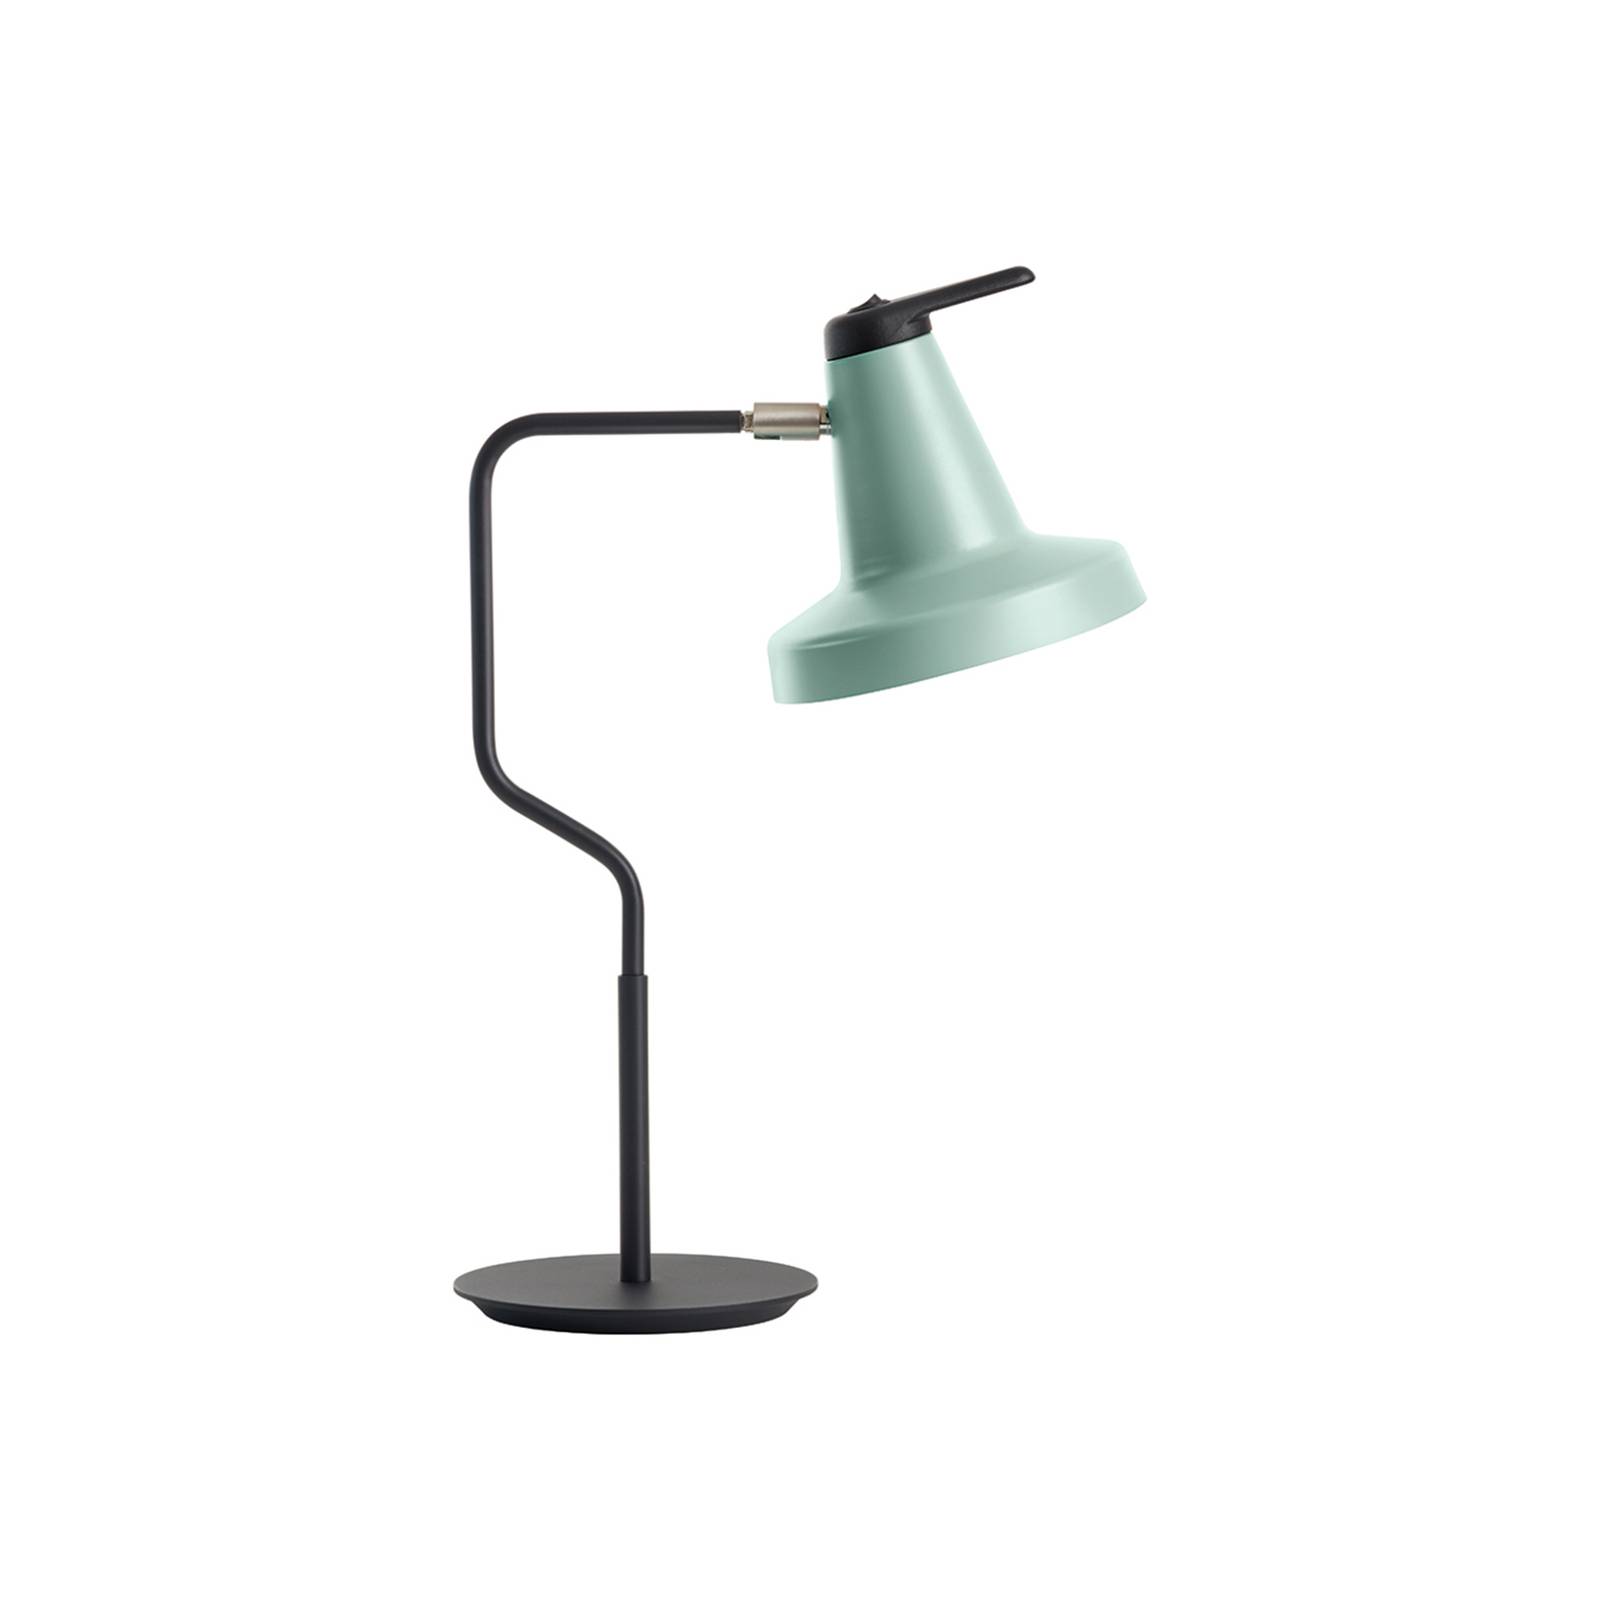 Carpyen garçon asztali lámpa, állítható ernyő, menta/fekete